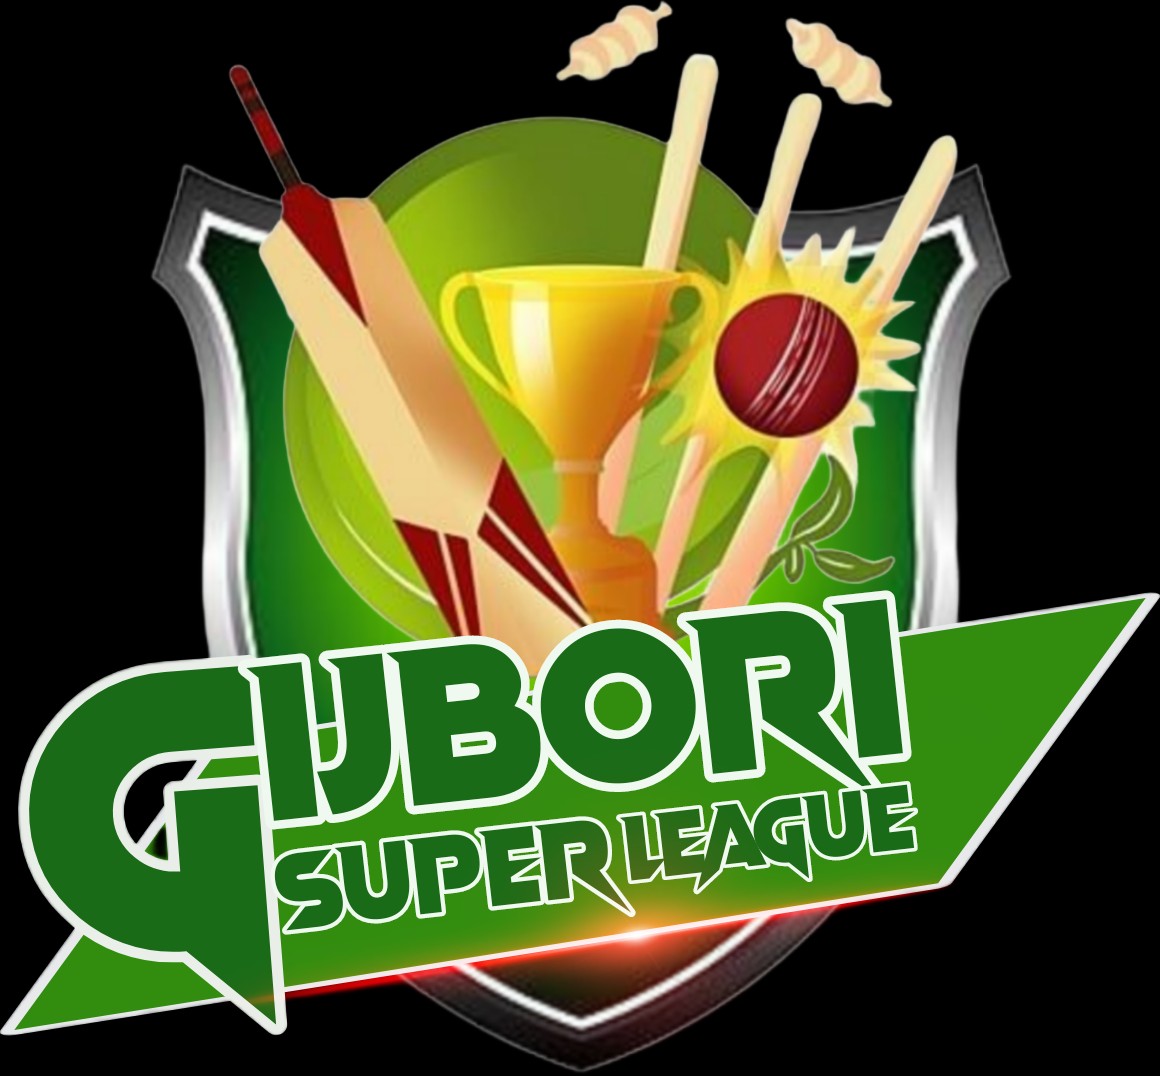 Gijbori Super League